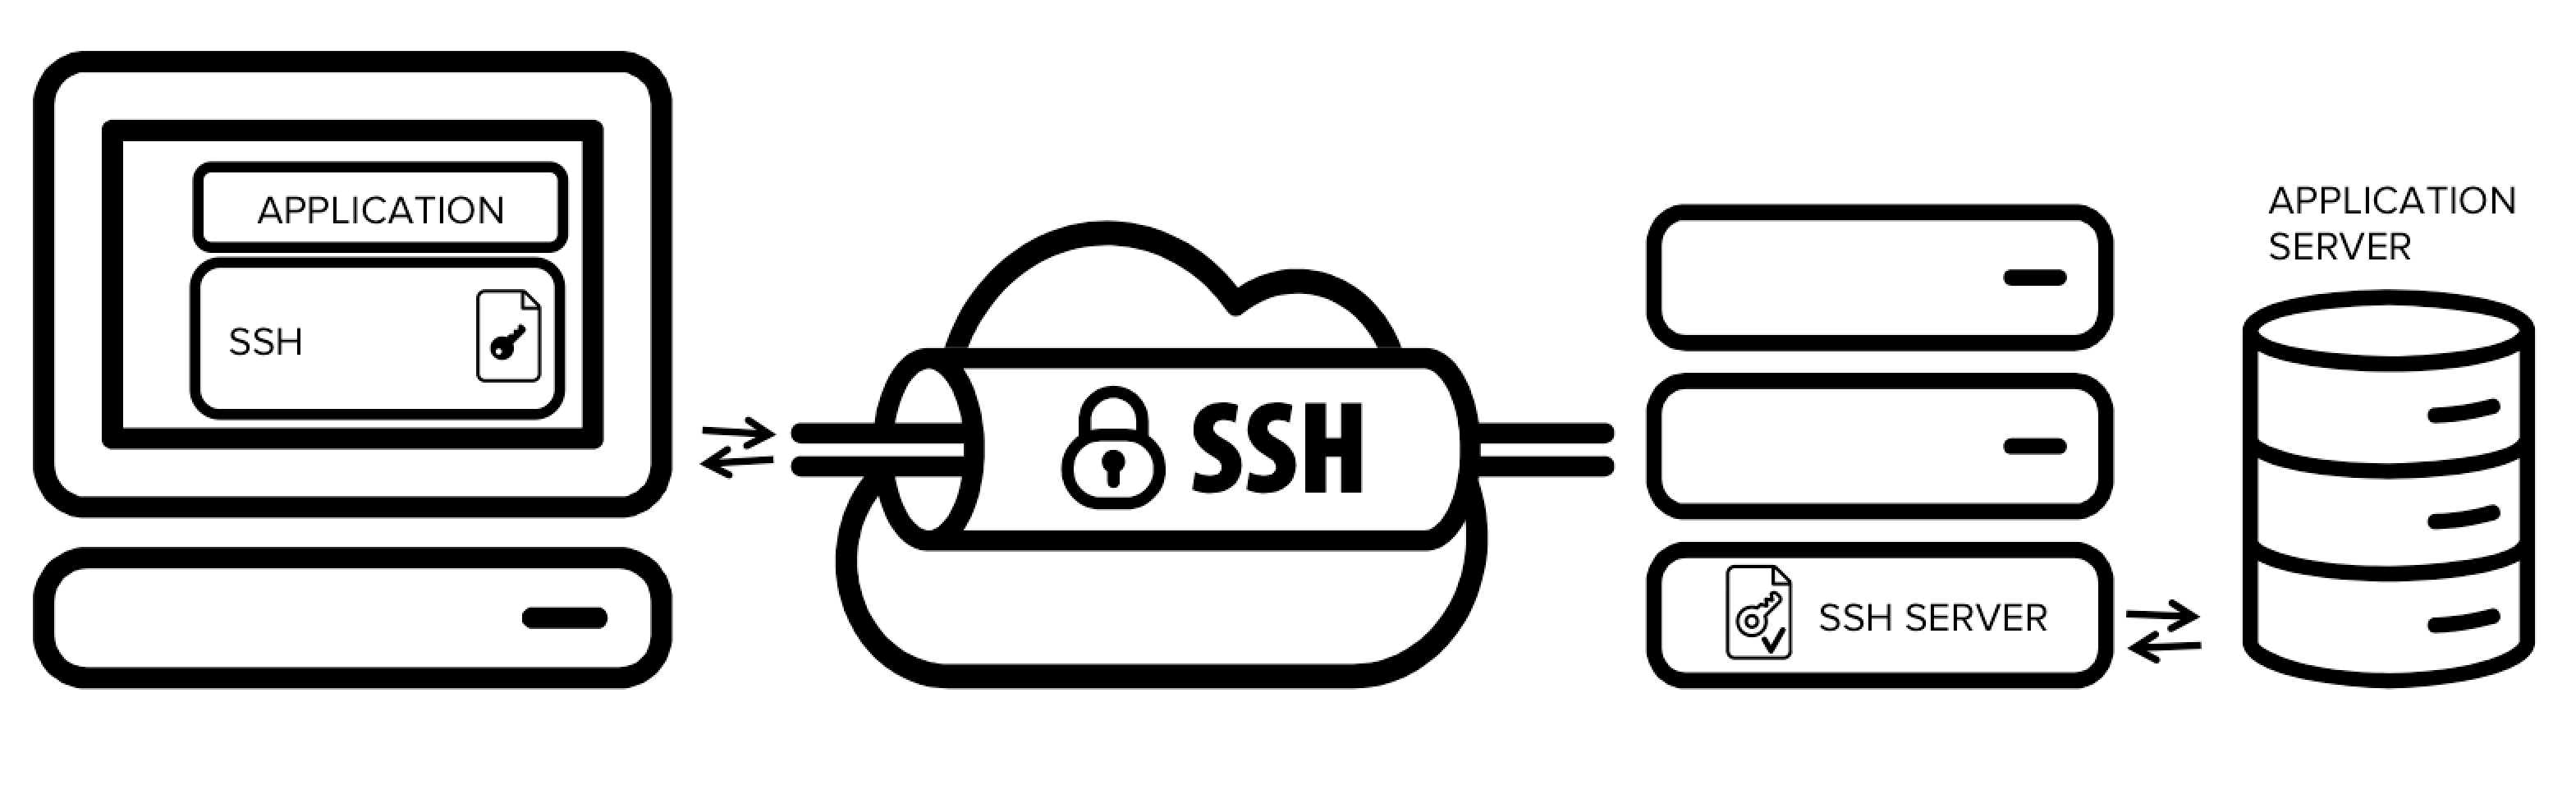 SSH Là Gì] - Tìm hiểu về Secure Shell Protocol từ A-Z